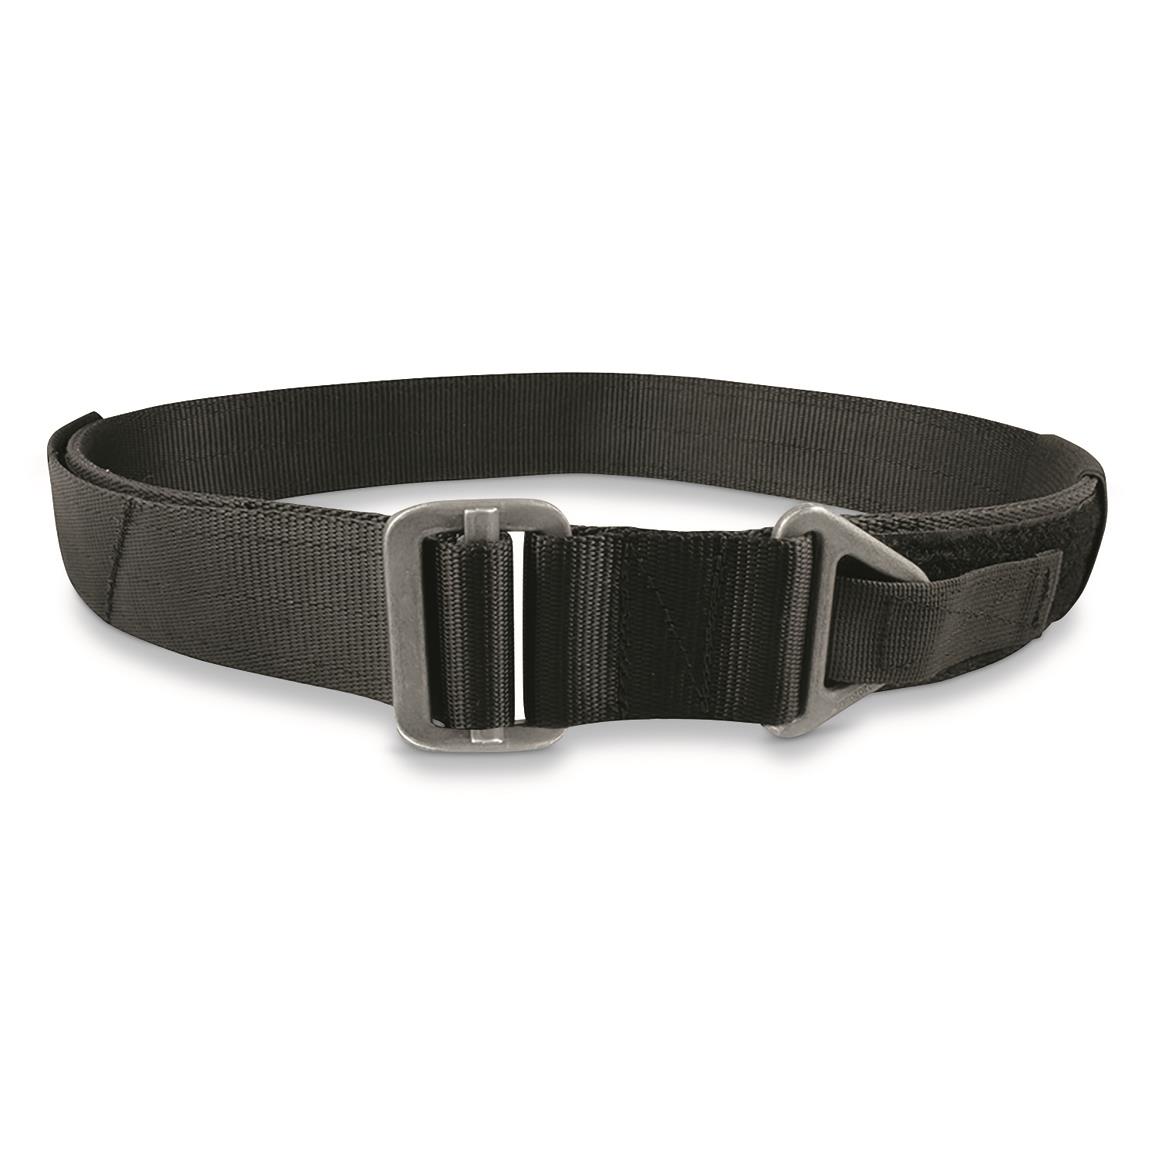 Bison Designs Renegade Rigger Belt, Black